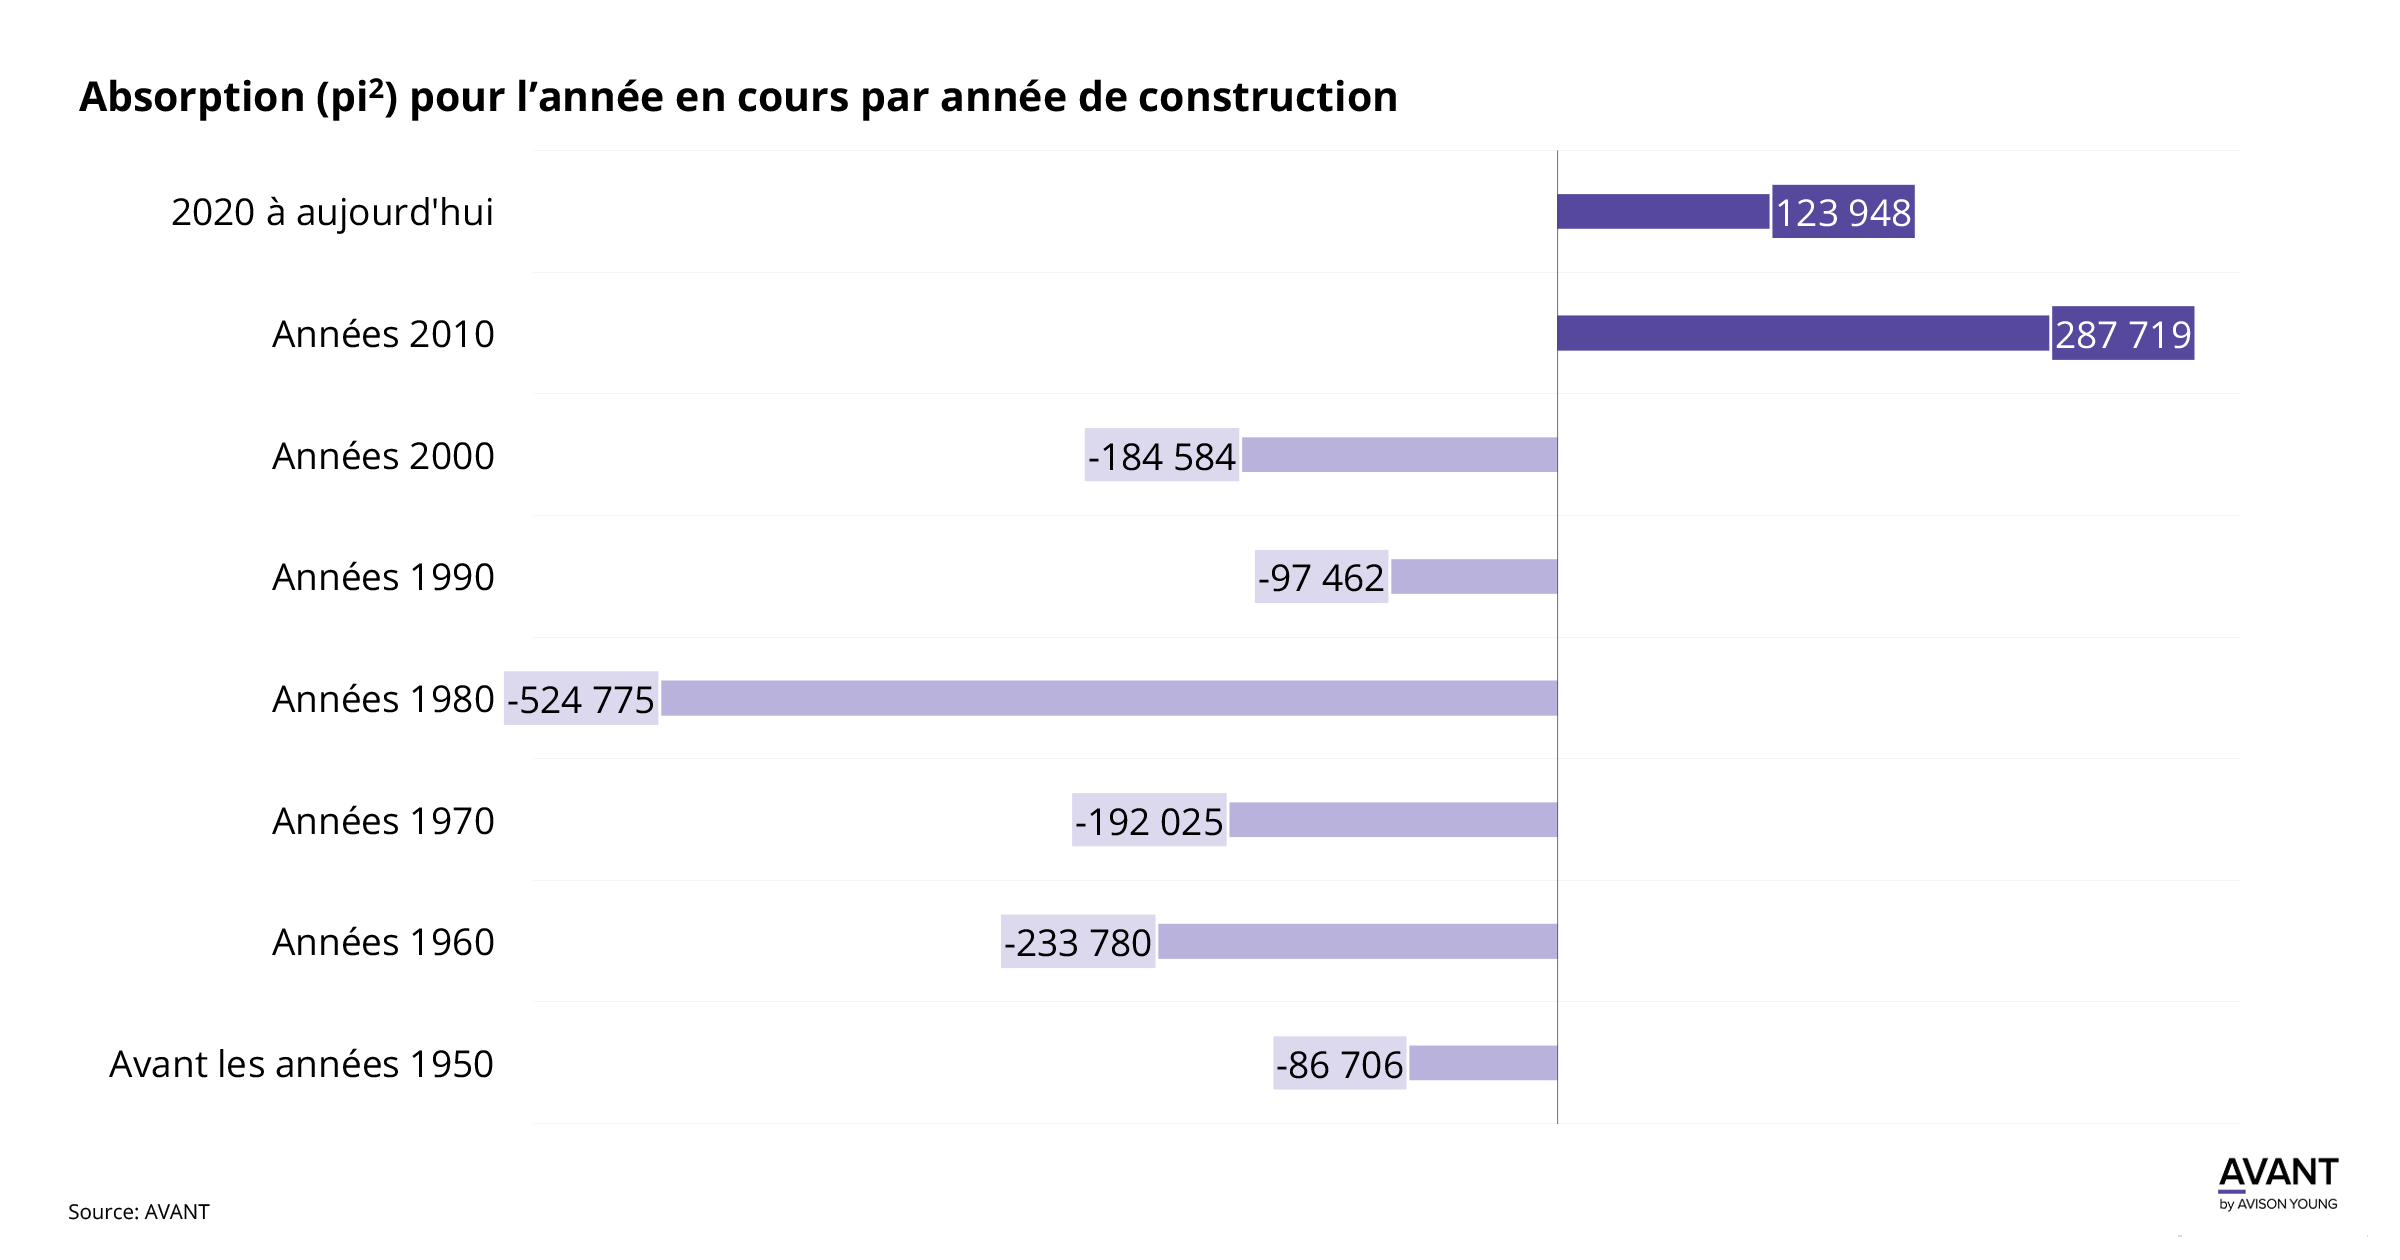 Tableau de l'absorption jusqu'à ce jour en pieds carrés à Montréal par année de construction